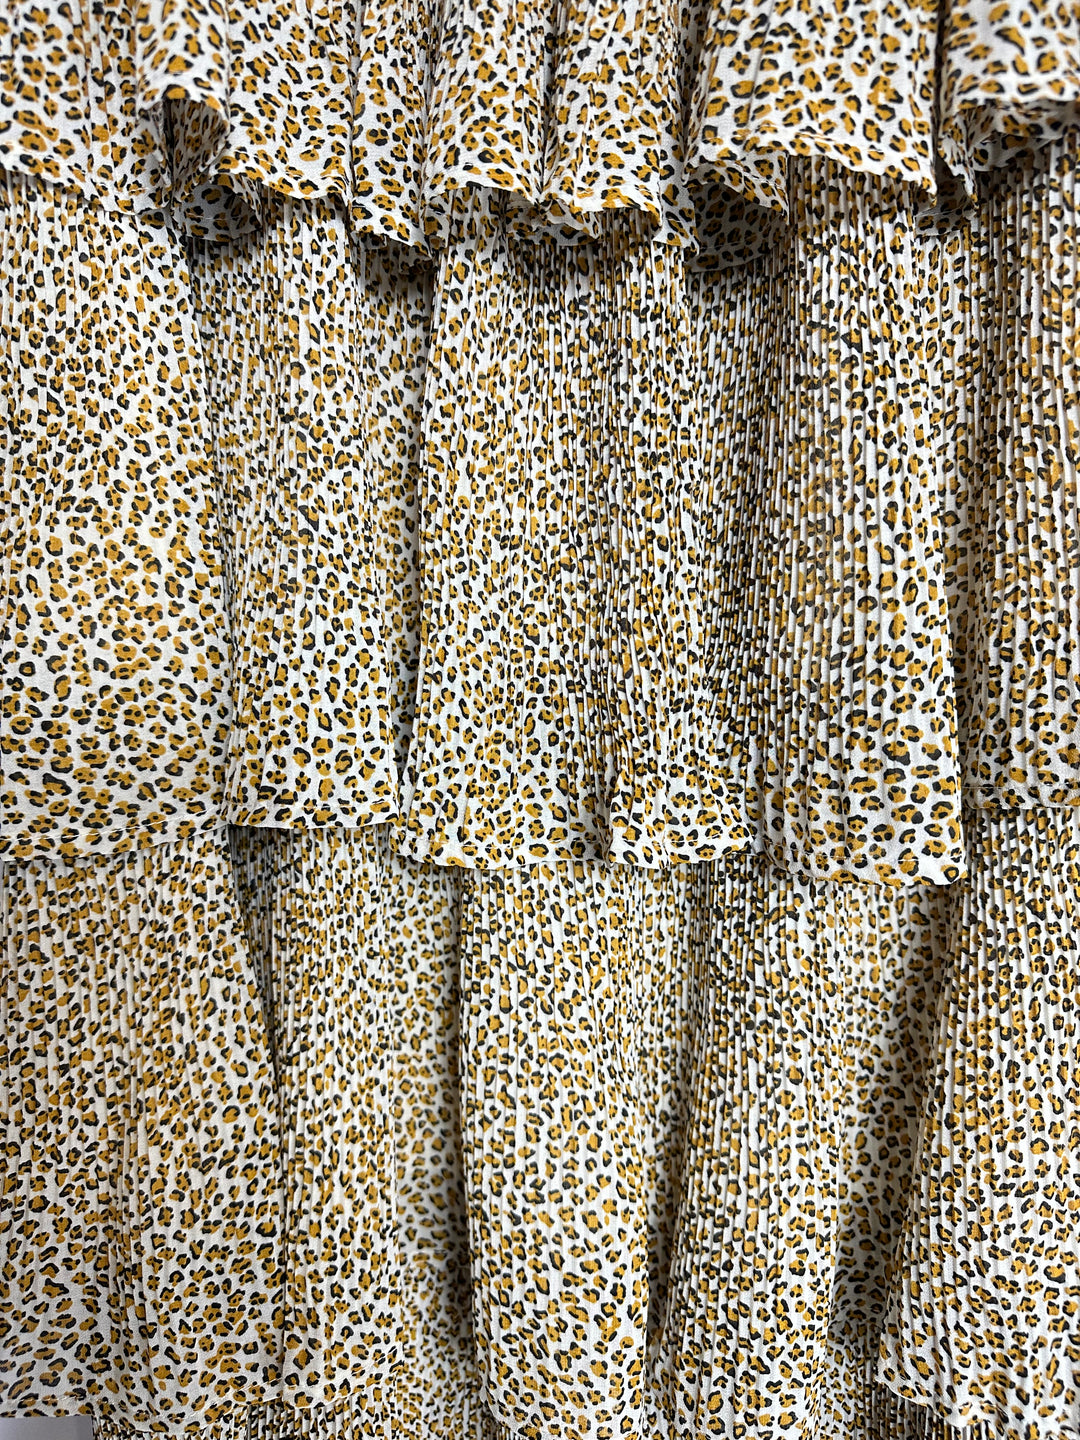 Sandrea Long Tiered Crinkled Animal Print Modest Skirt